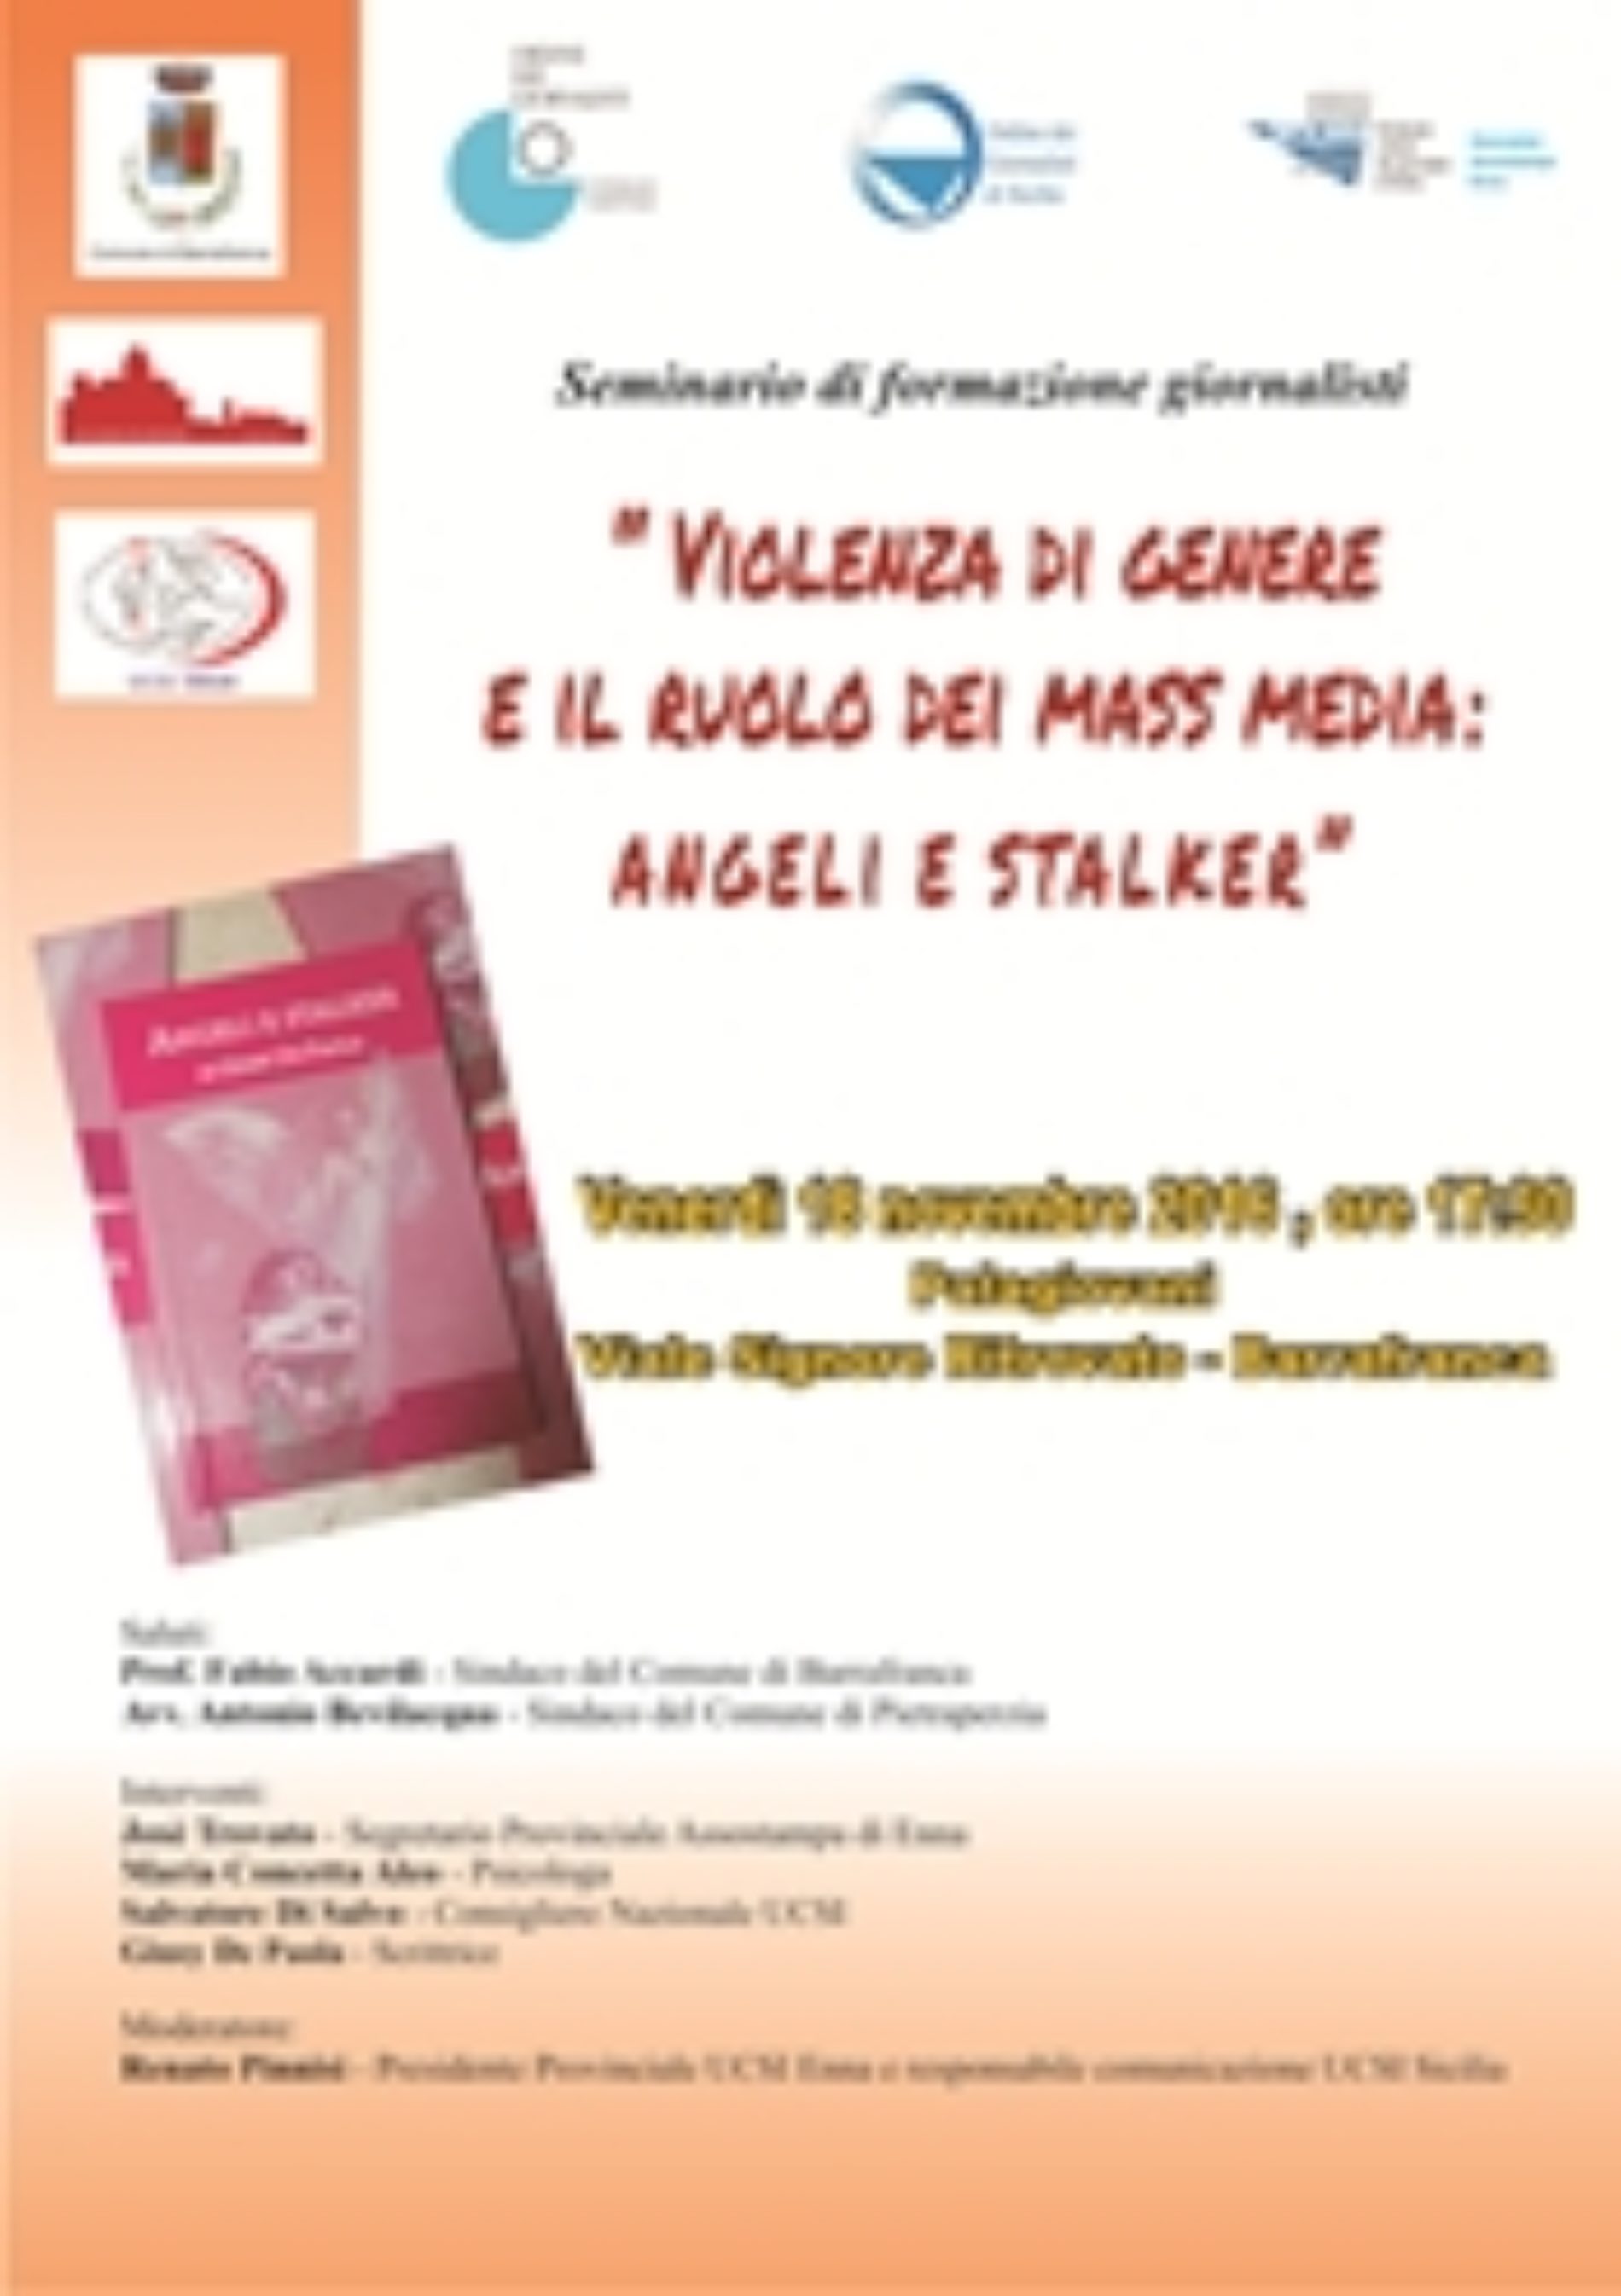 “Violenza di genere e il ruolo dei Mass Media: Angeli e Stalker”- Seminario di formazione giornalisti